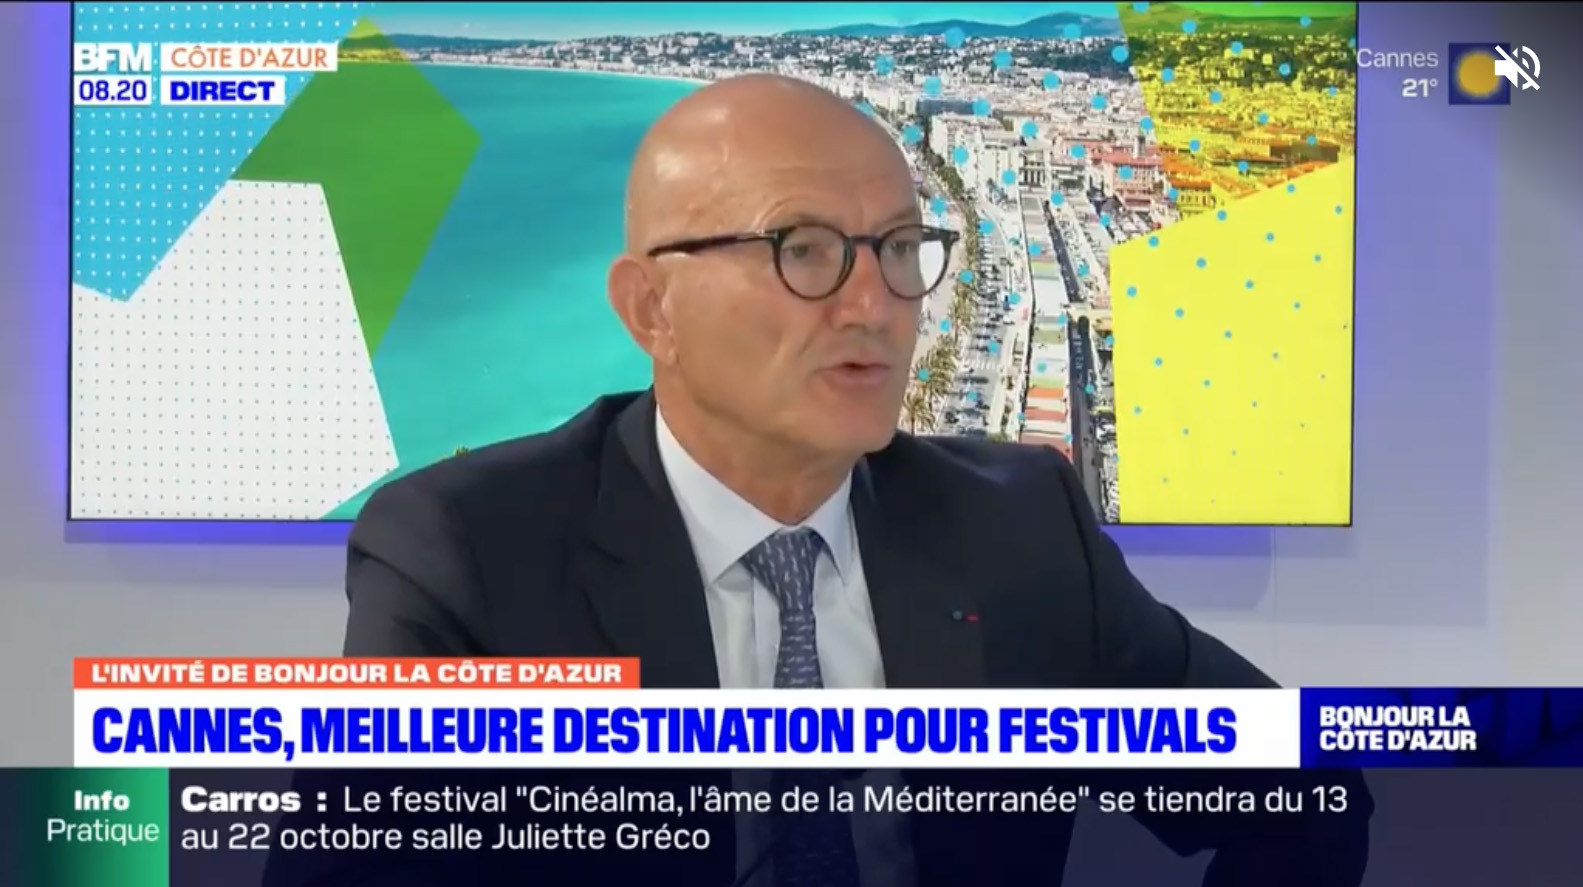 BFM Côte d’azur : Cannes, les travaux posent des « soucis » mais sont « capitaux » pour le Palais des festivals